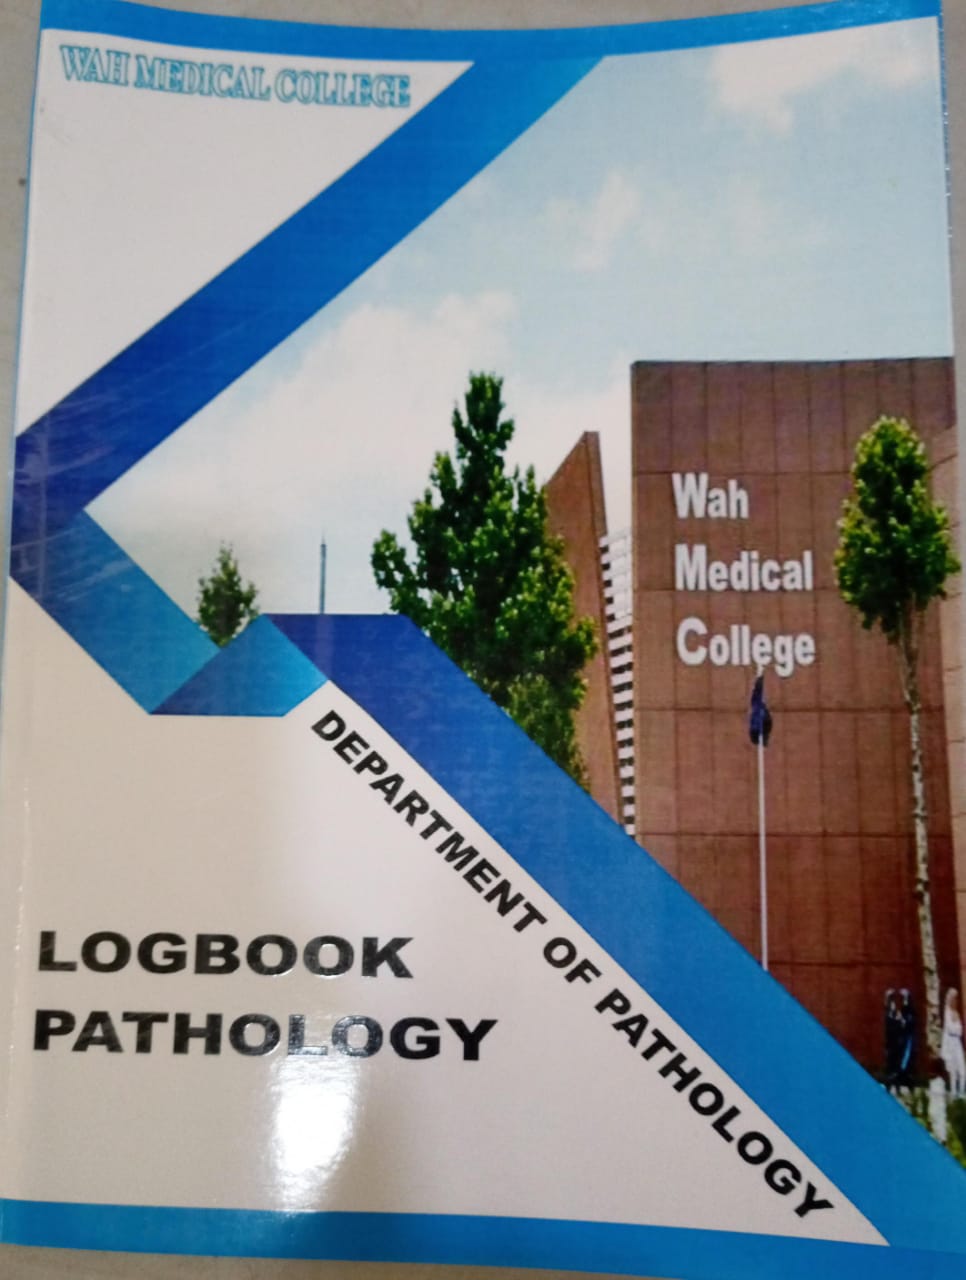 wah medical college logbook pathology